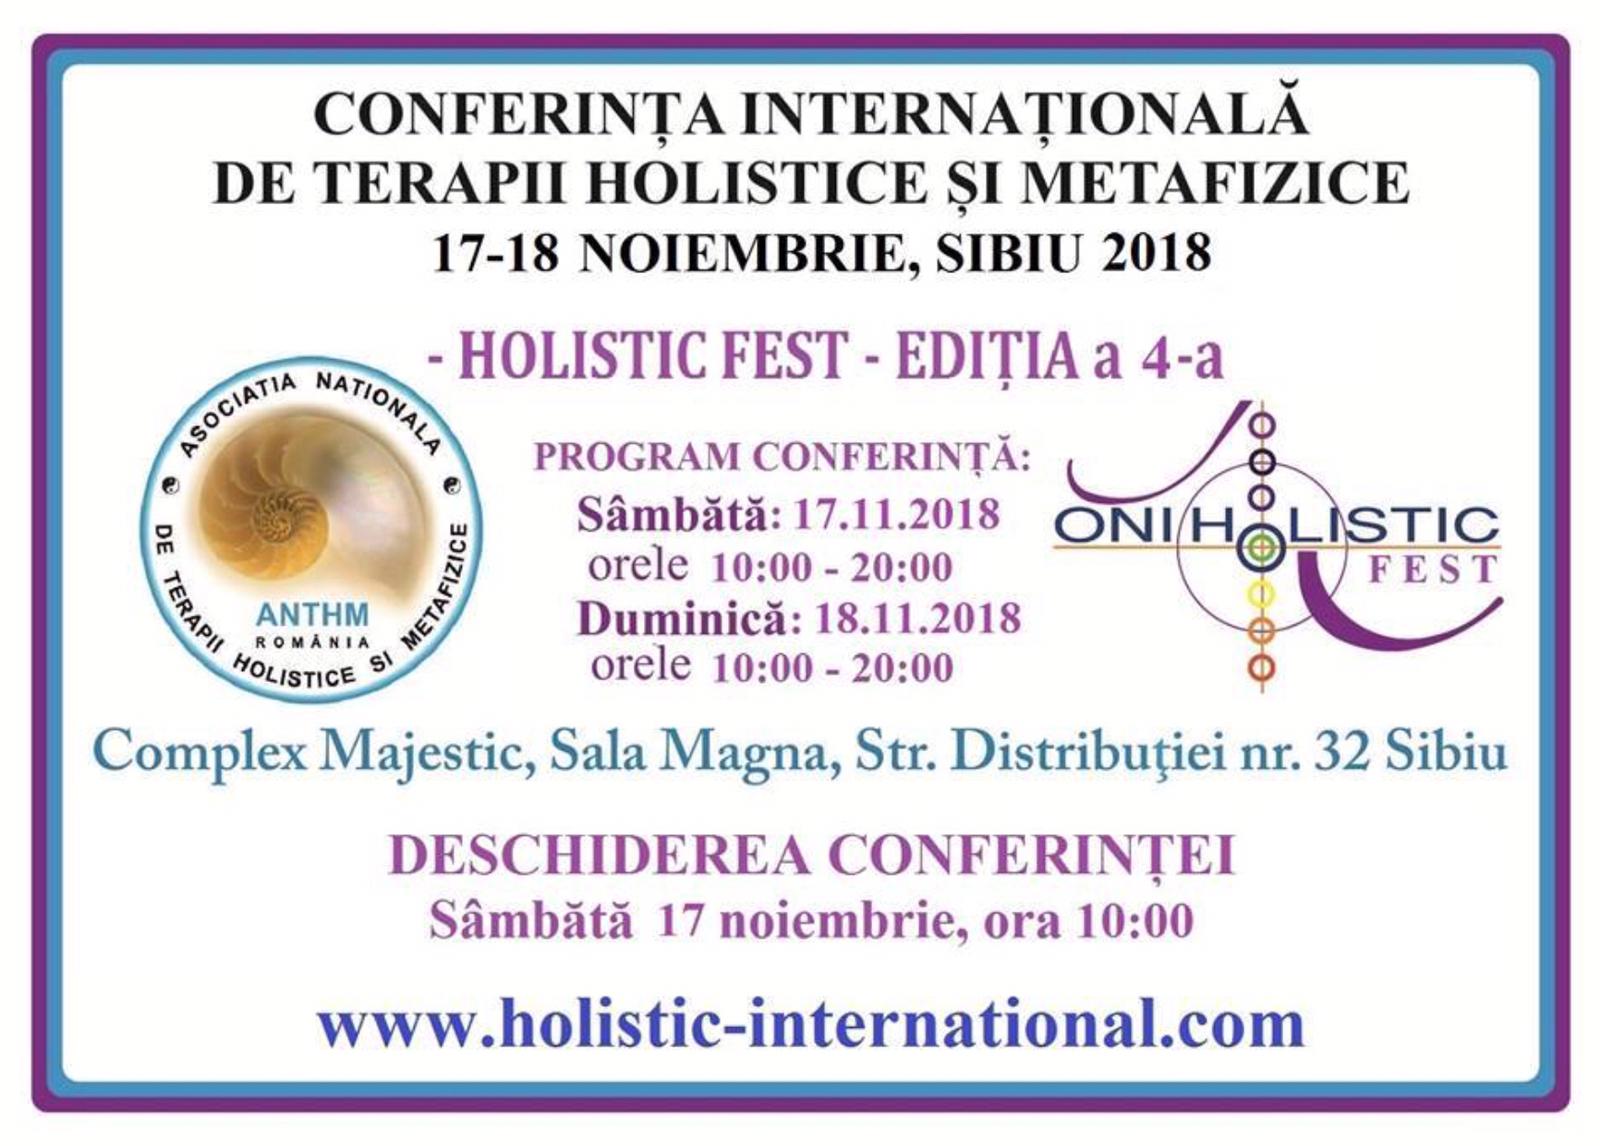 Holistic Fest 2018, Conferinta Internationala a Terapiilor Holistice si Metafizice Sibiu, editia 4